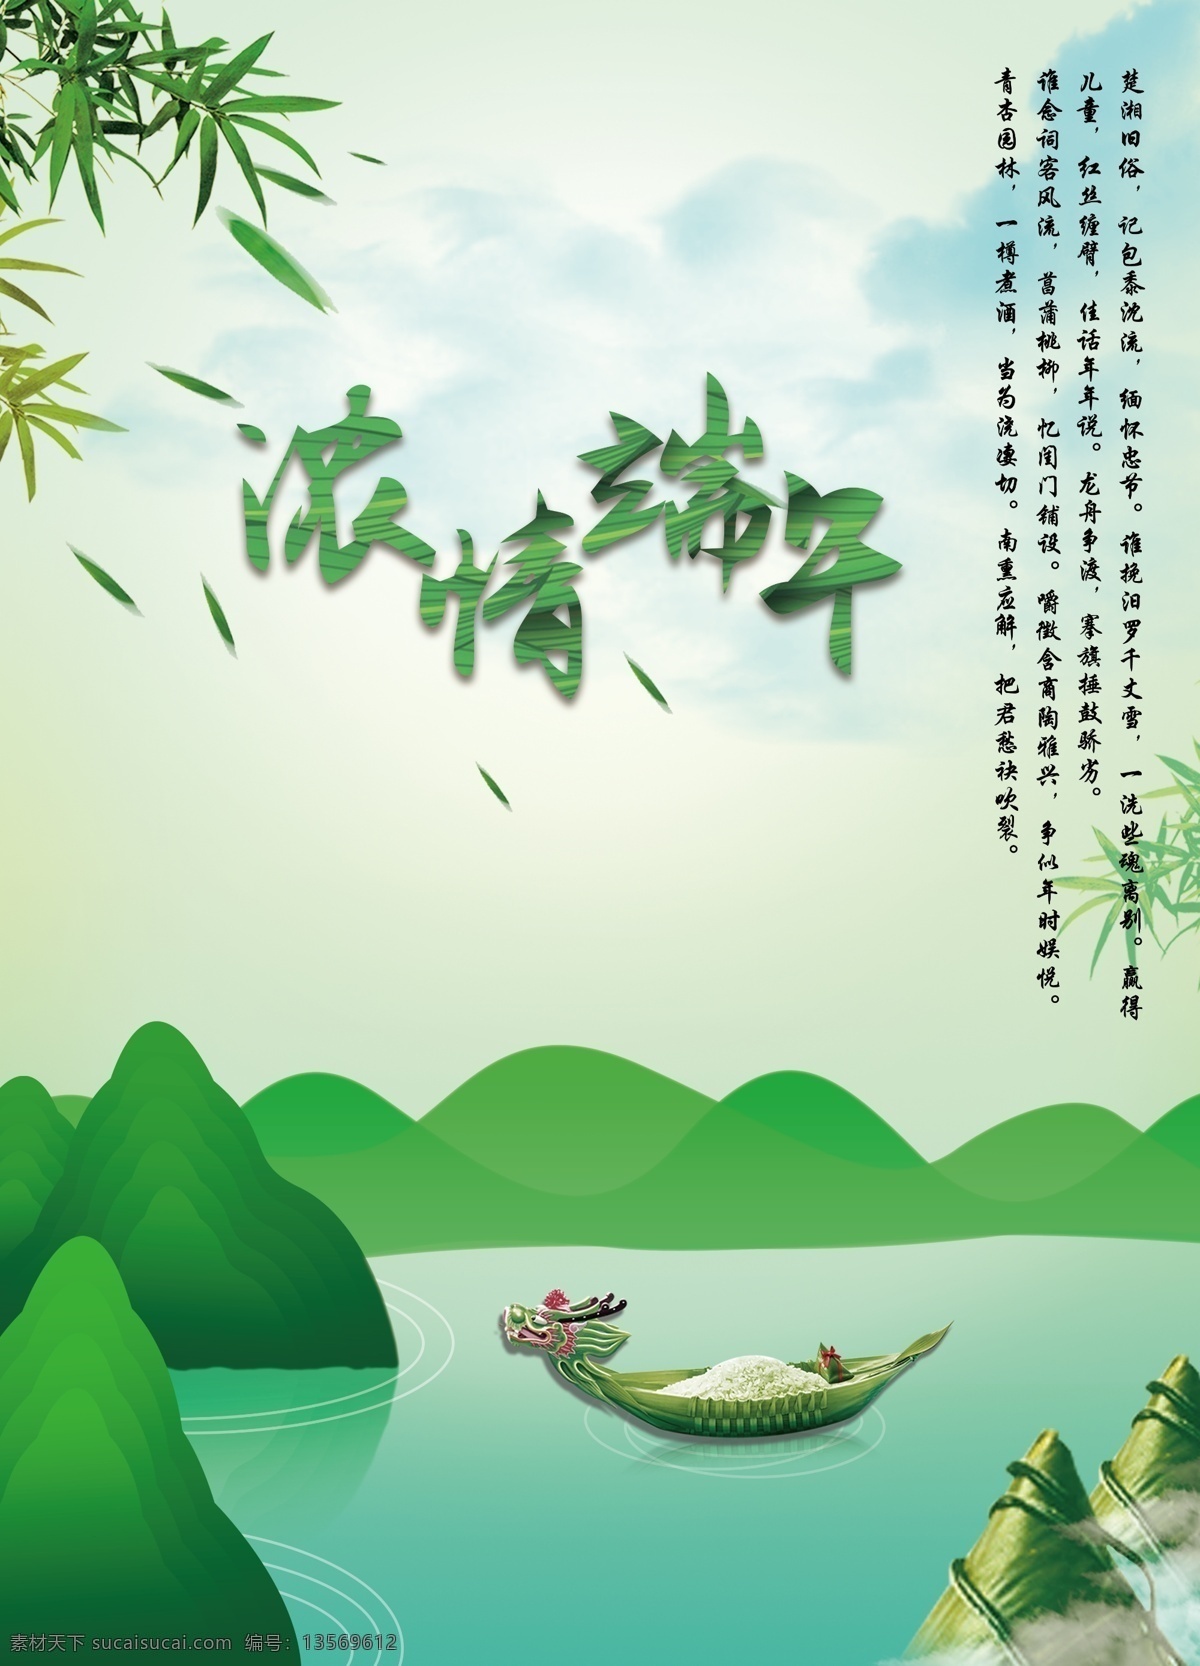 浓 情 端午 节日 海报 绿色 山水 蓝色 风景 竹叶 粽子 龙舟 青色 手绘